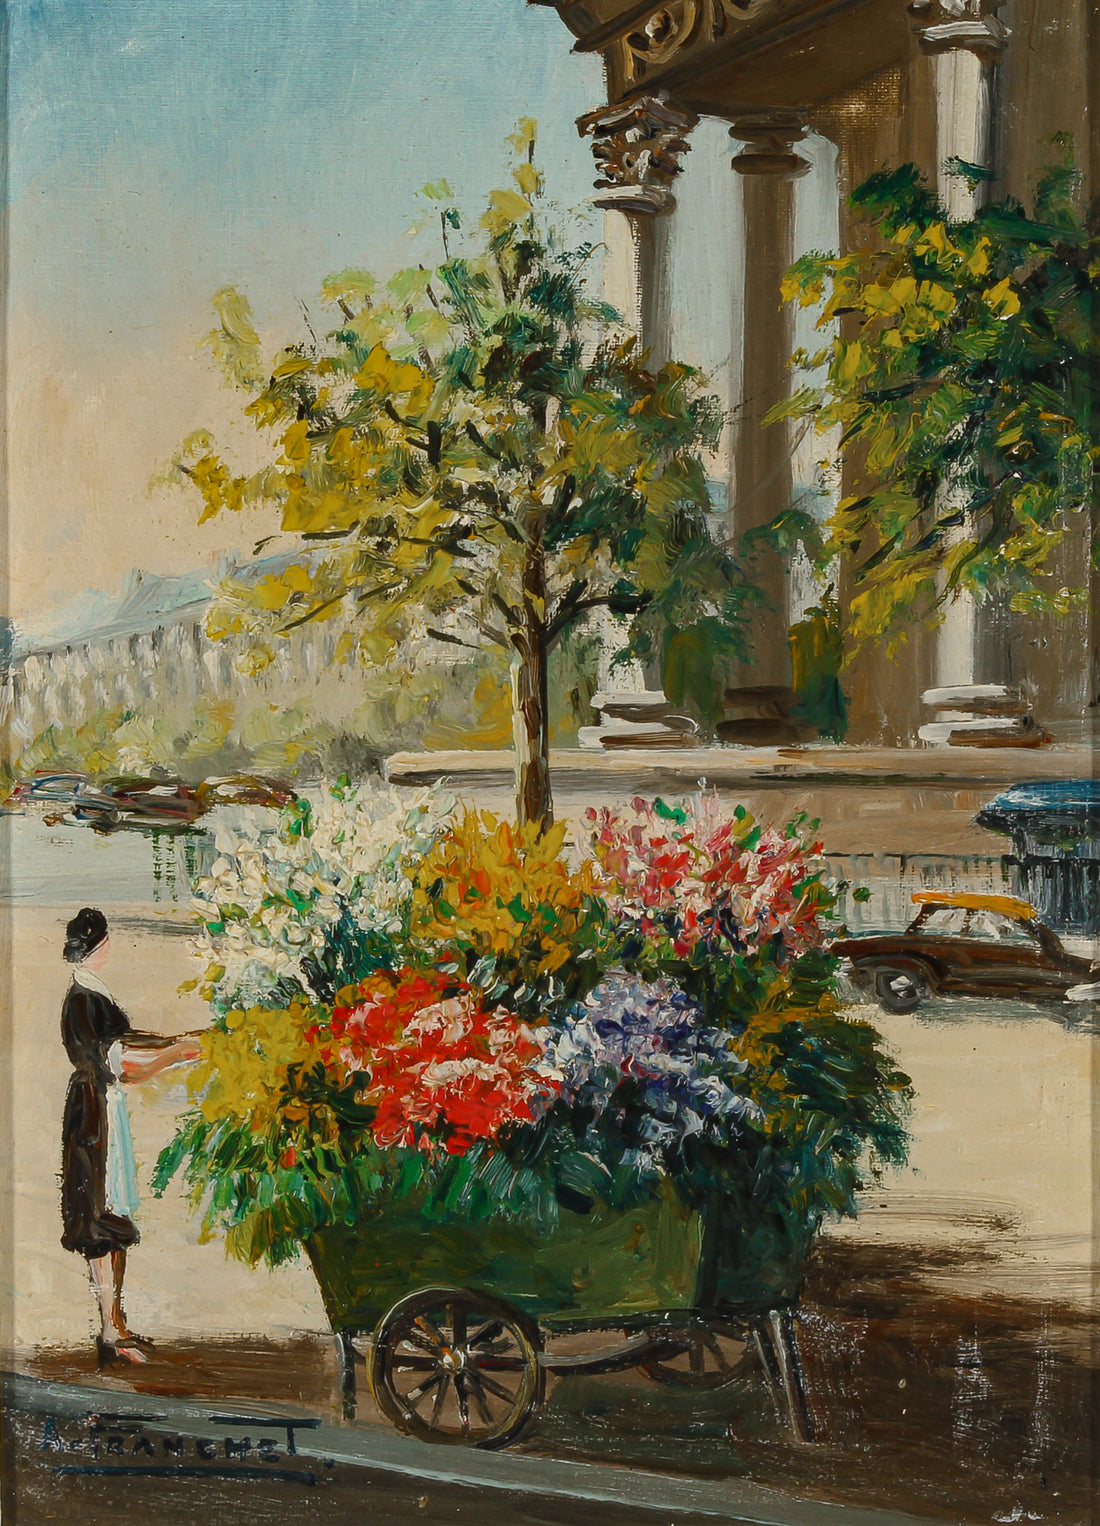 Andre Franchet - "Paris-Voiture Fleurie" - Oil on Canvas